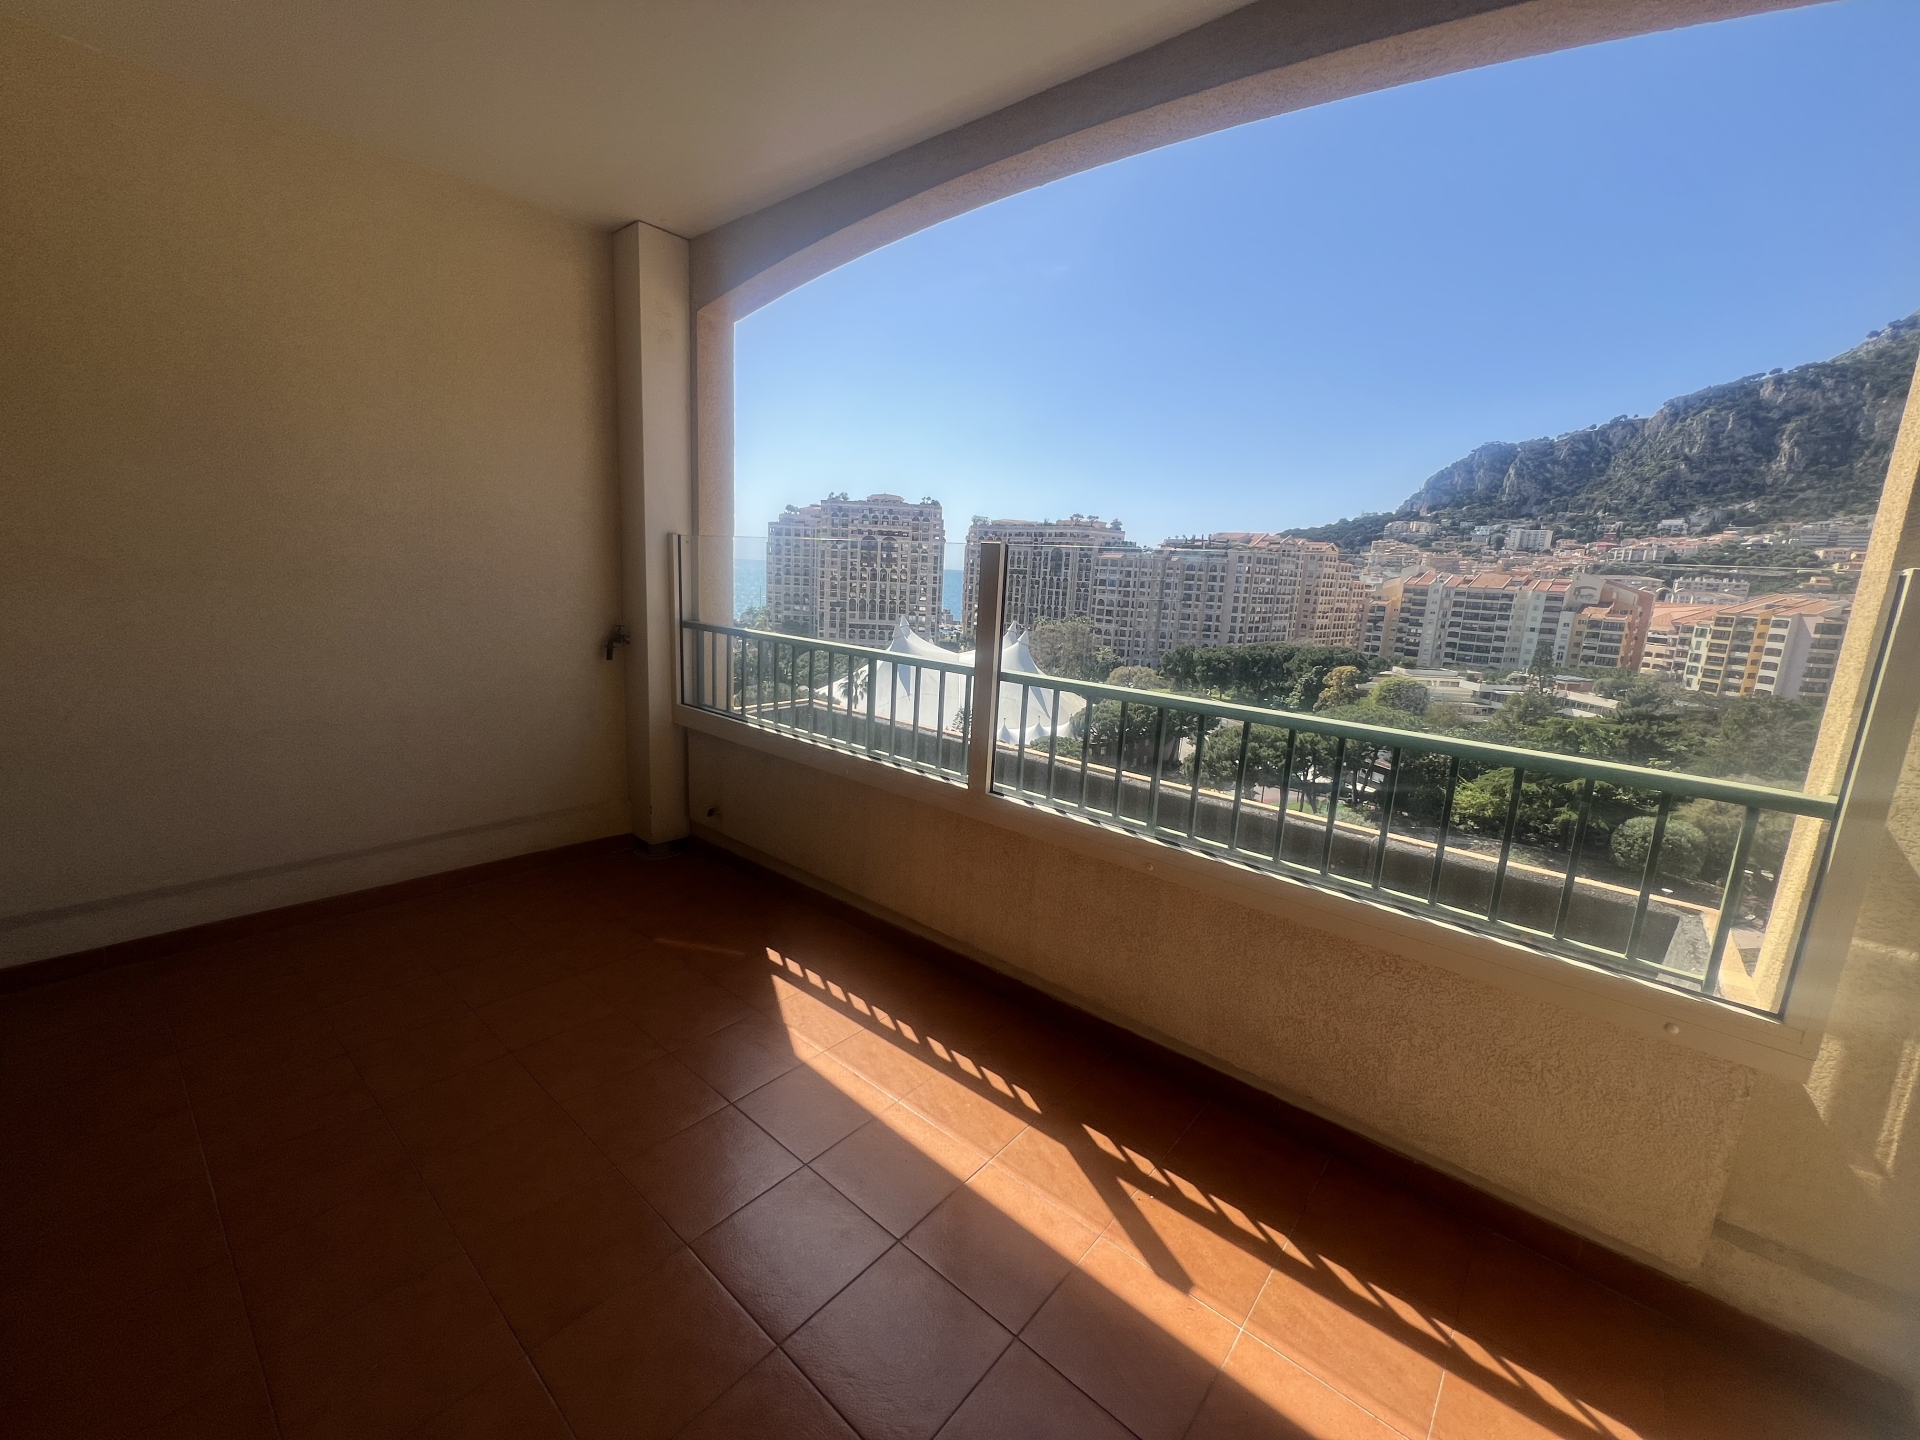 Dotta Appartement de 2 pieces a vendre - ROSA MARIS - Fontvieille - Monaco - imgimage00011